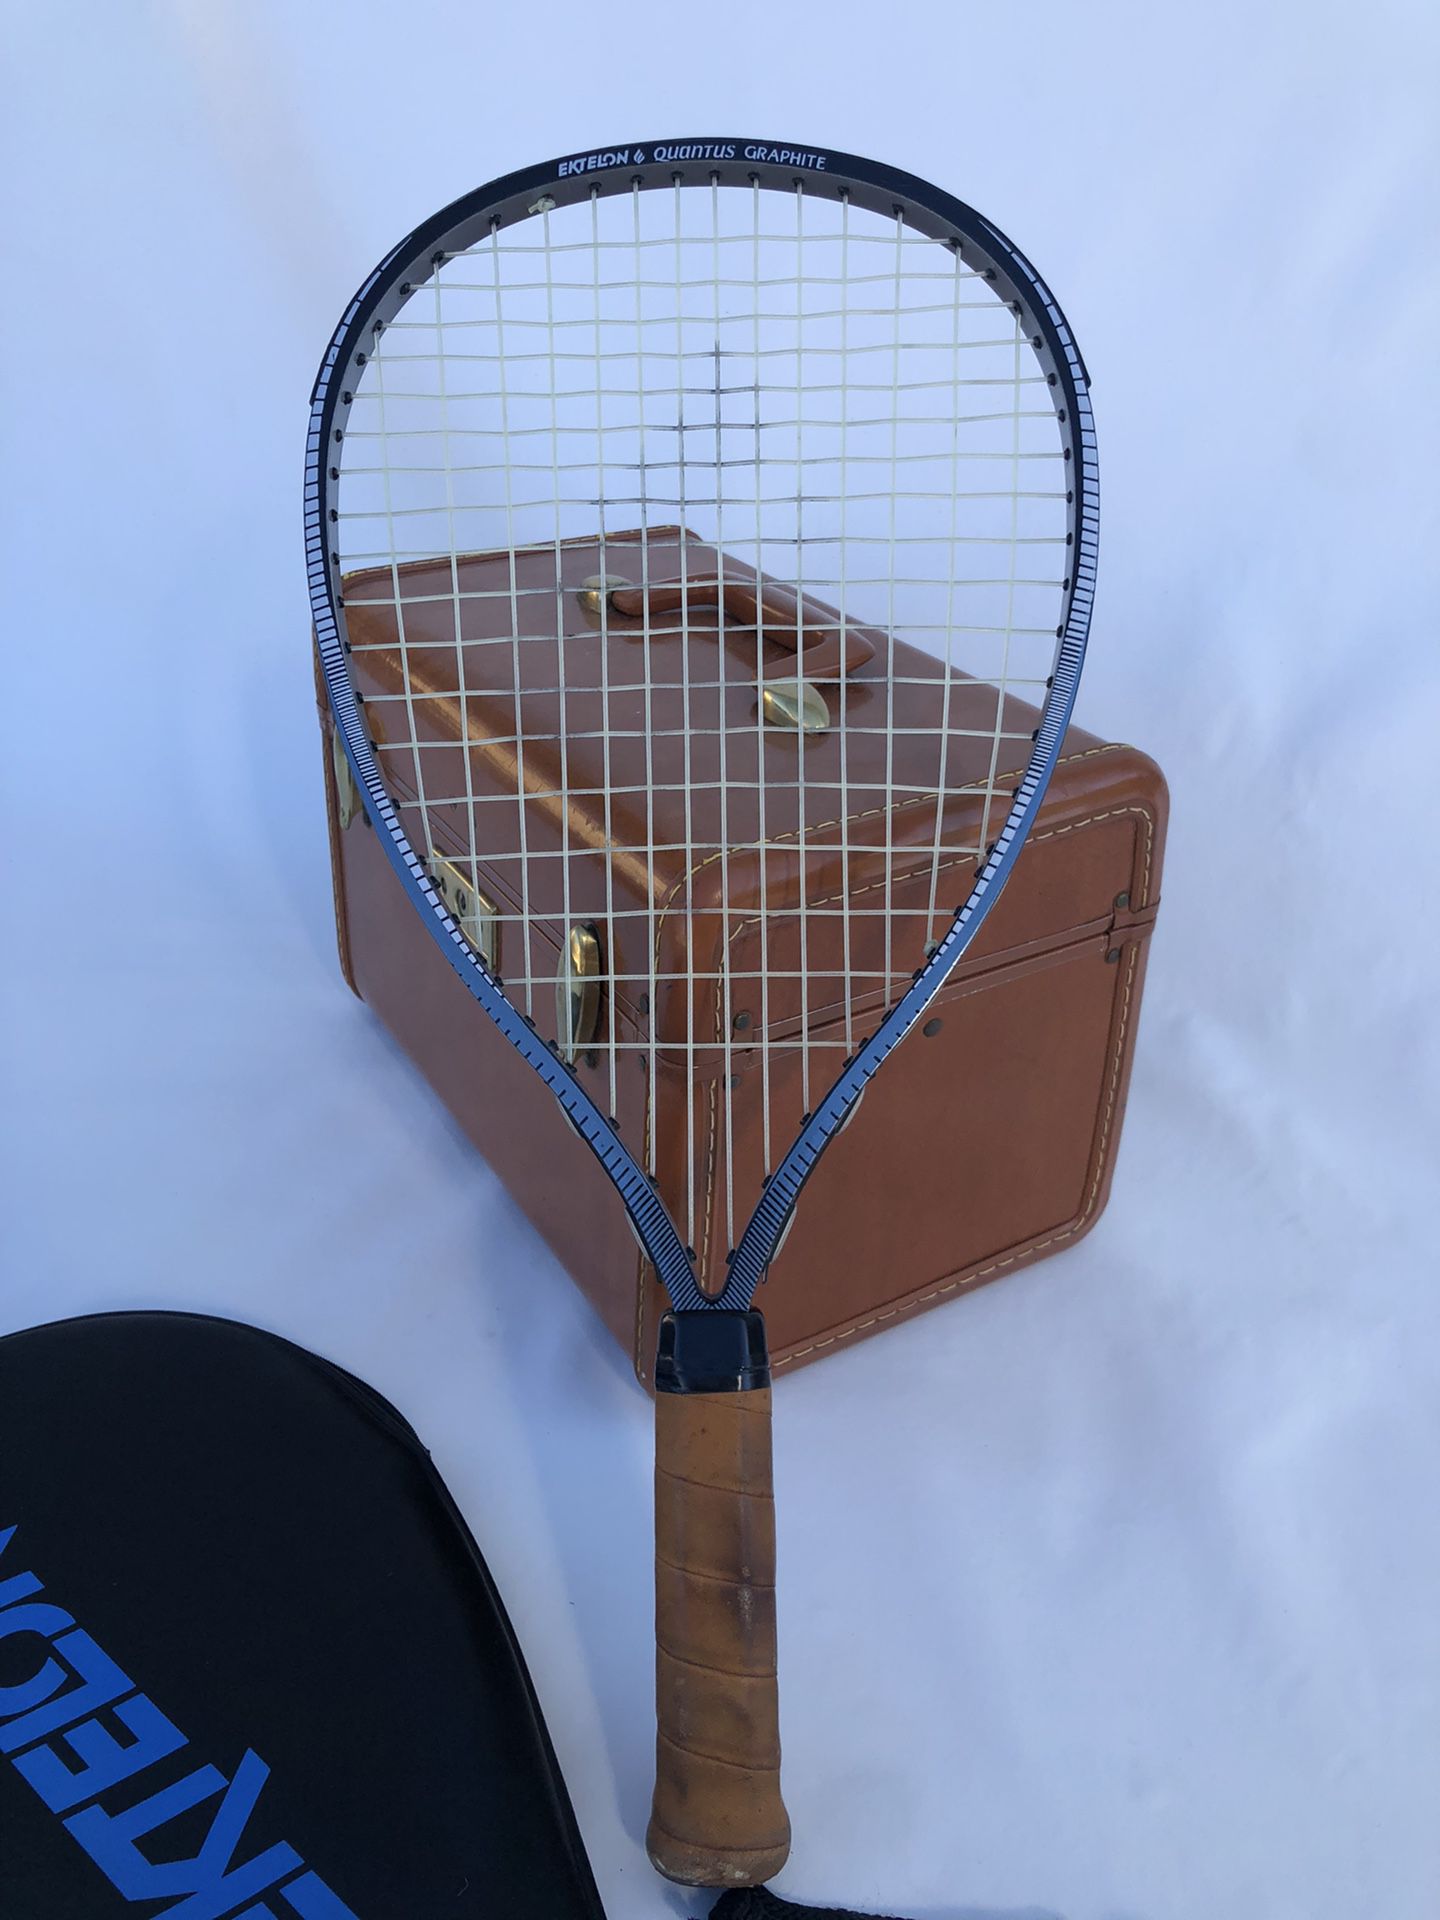 Ektelon Quantus Graphite Classic Tennis Racket 